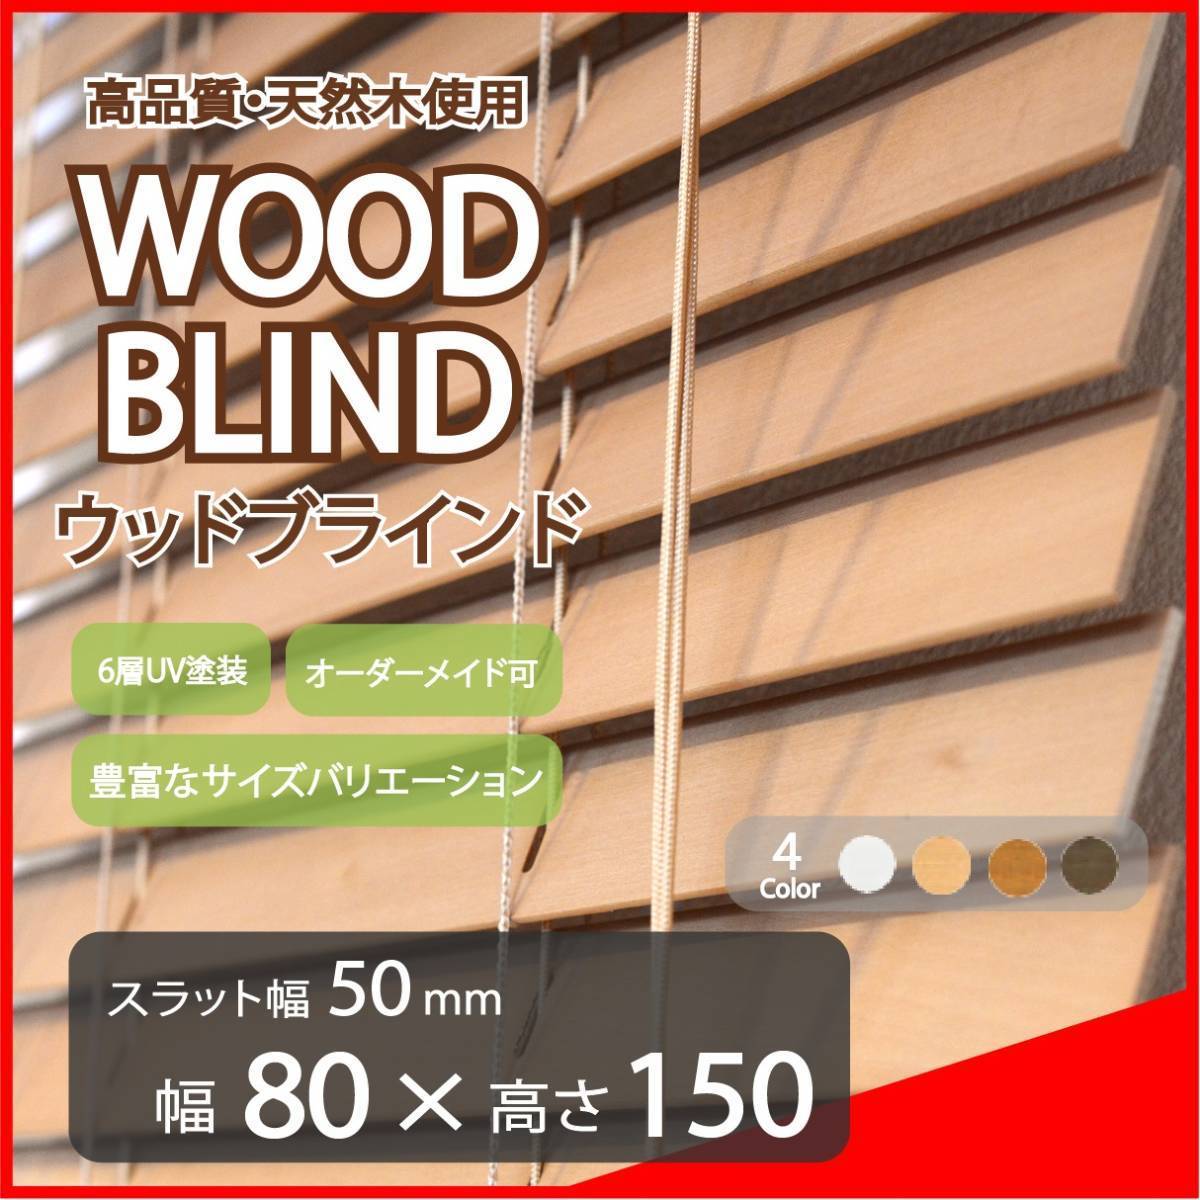 窓枠に合わせてサイズ加工が可能 高品質 ウッドブラインド 木製 ブラインドカーテン オーダー可 スラット(羽根)幅50mm 幅80cm×高さ150cm